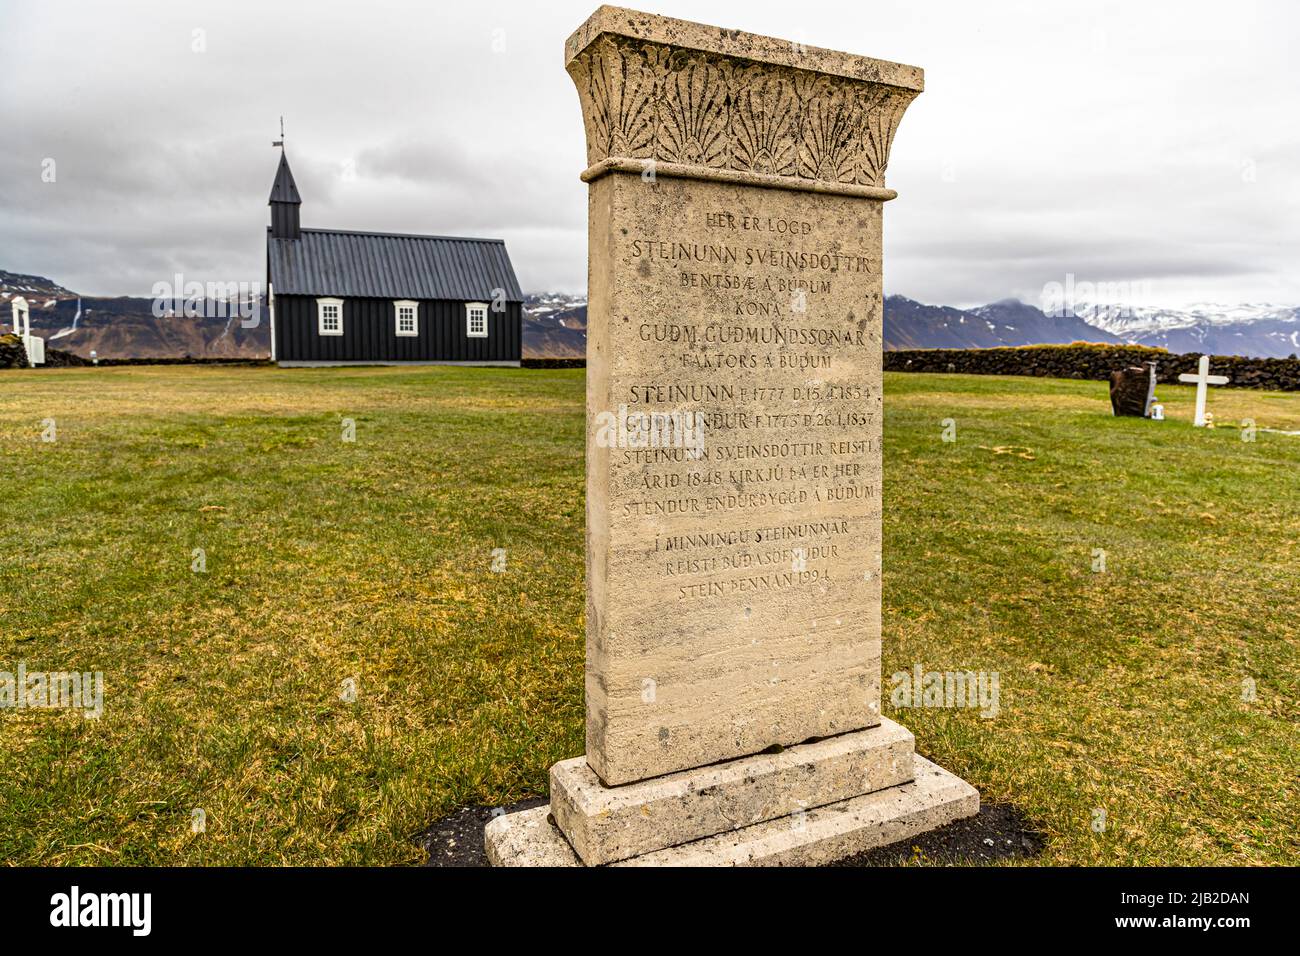 Die kleine Holzkirche Búðakirkja (Island) stammt aus dem 19.. Jahrhundert und liegt in einem landschaftlich reizvollen Naturgebiet mit einem Lavafeld. Die Kirche wurde trotz des Klerus-Dekrets von Steinunn Sveinsdottir, die ihre letzte Ruhestätte auf dem Friedhof fand, erhalten Stockfoto